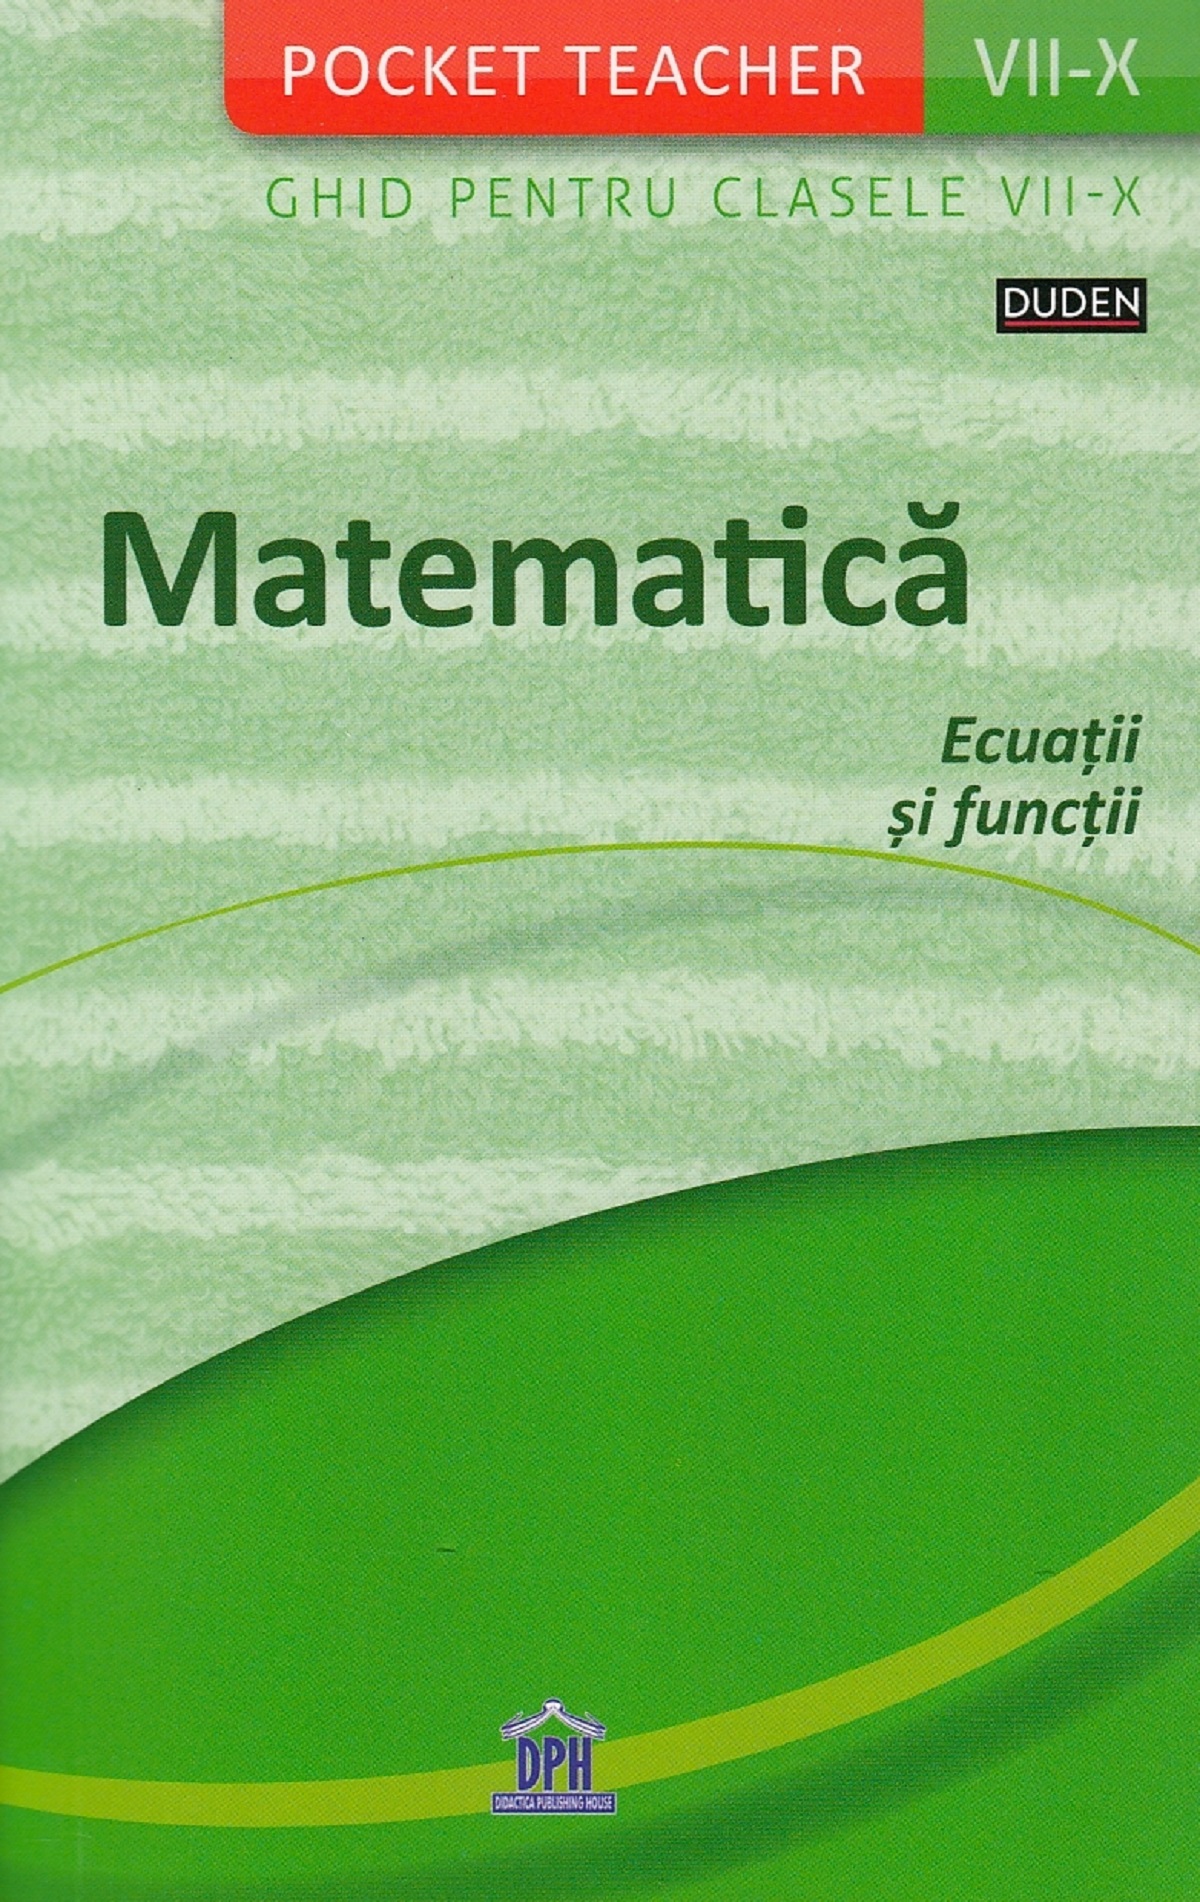 Pocket Teacher. Matematica. Ecuatii si functii. Ghid pentru clasele VII-X | Siegfried Schneider